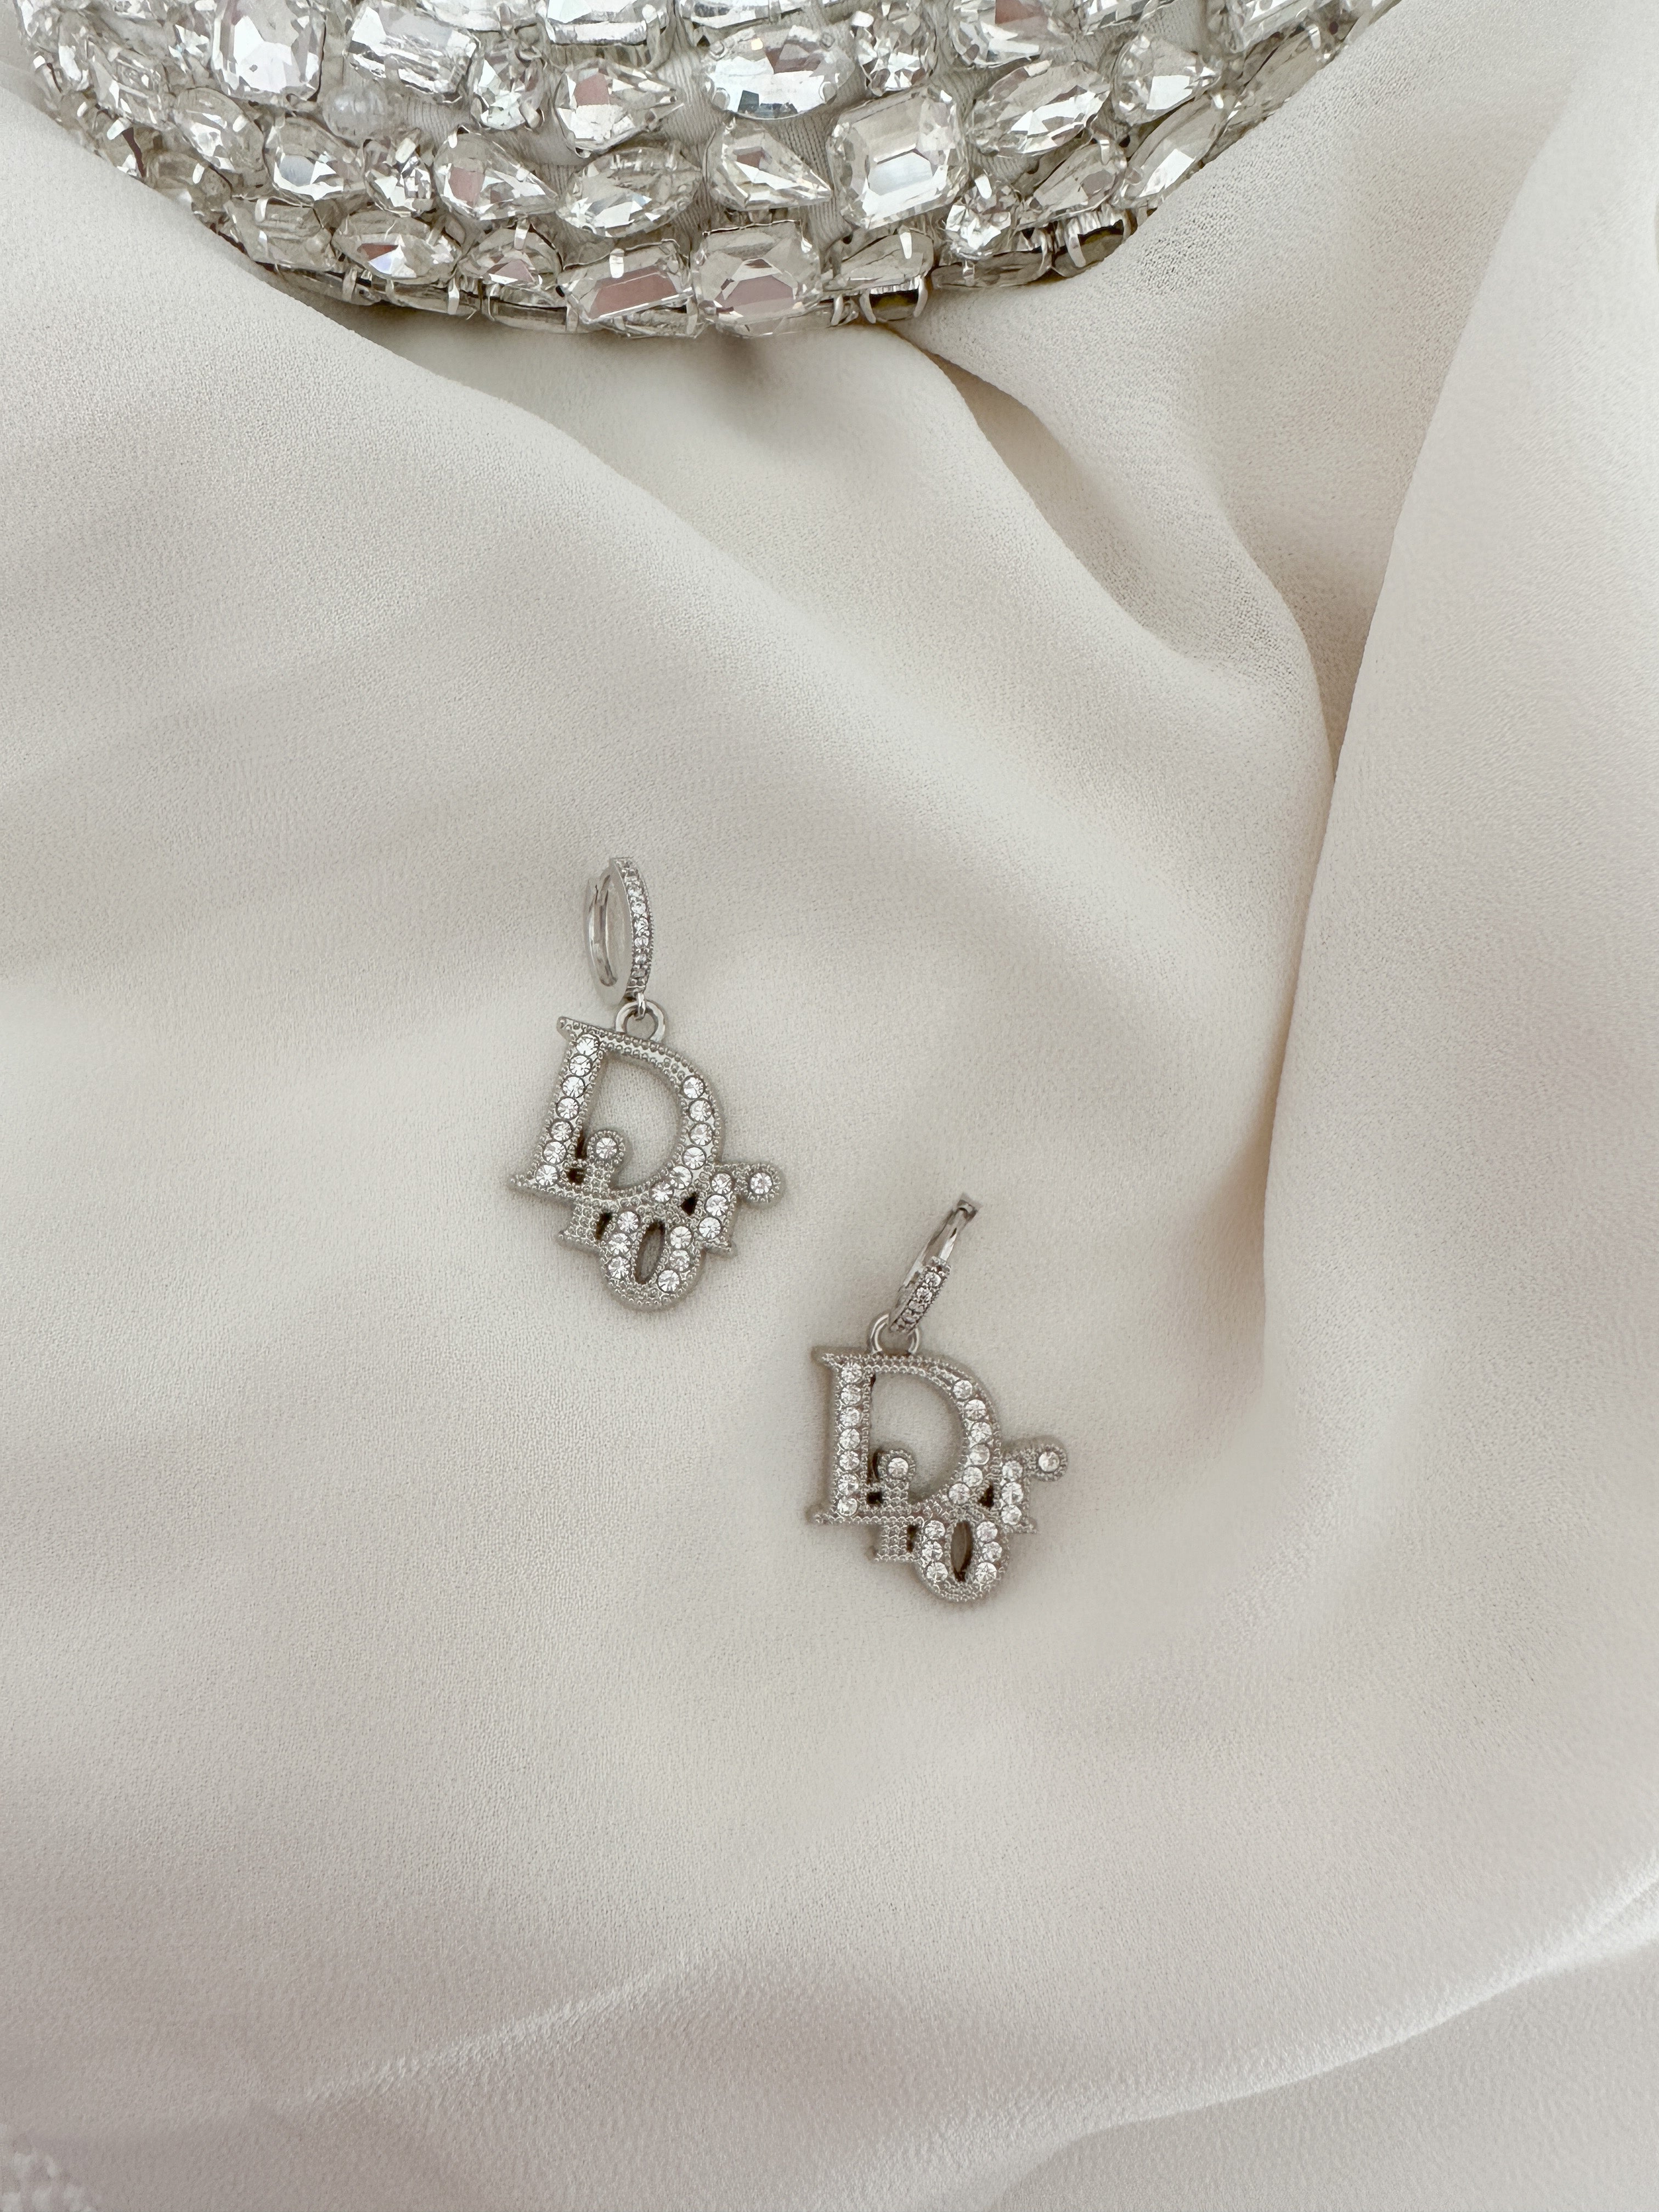 The “Bijoux” Silver Crystal Earrings